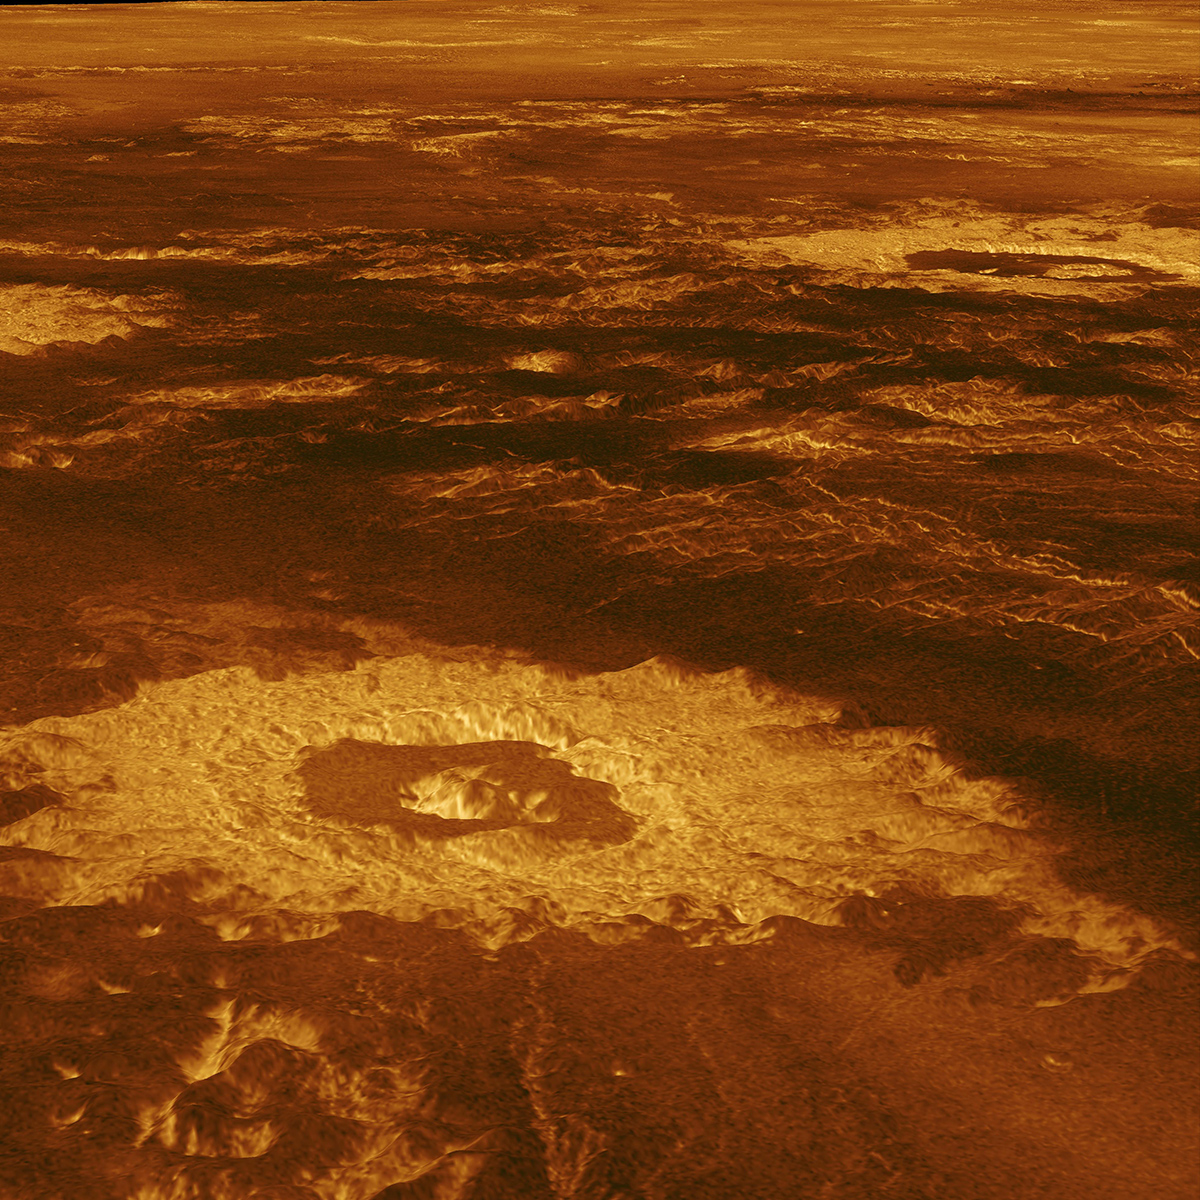 Three impact craters in Venus’ Lavinia Planitia